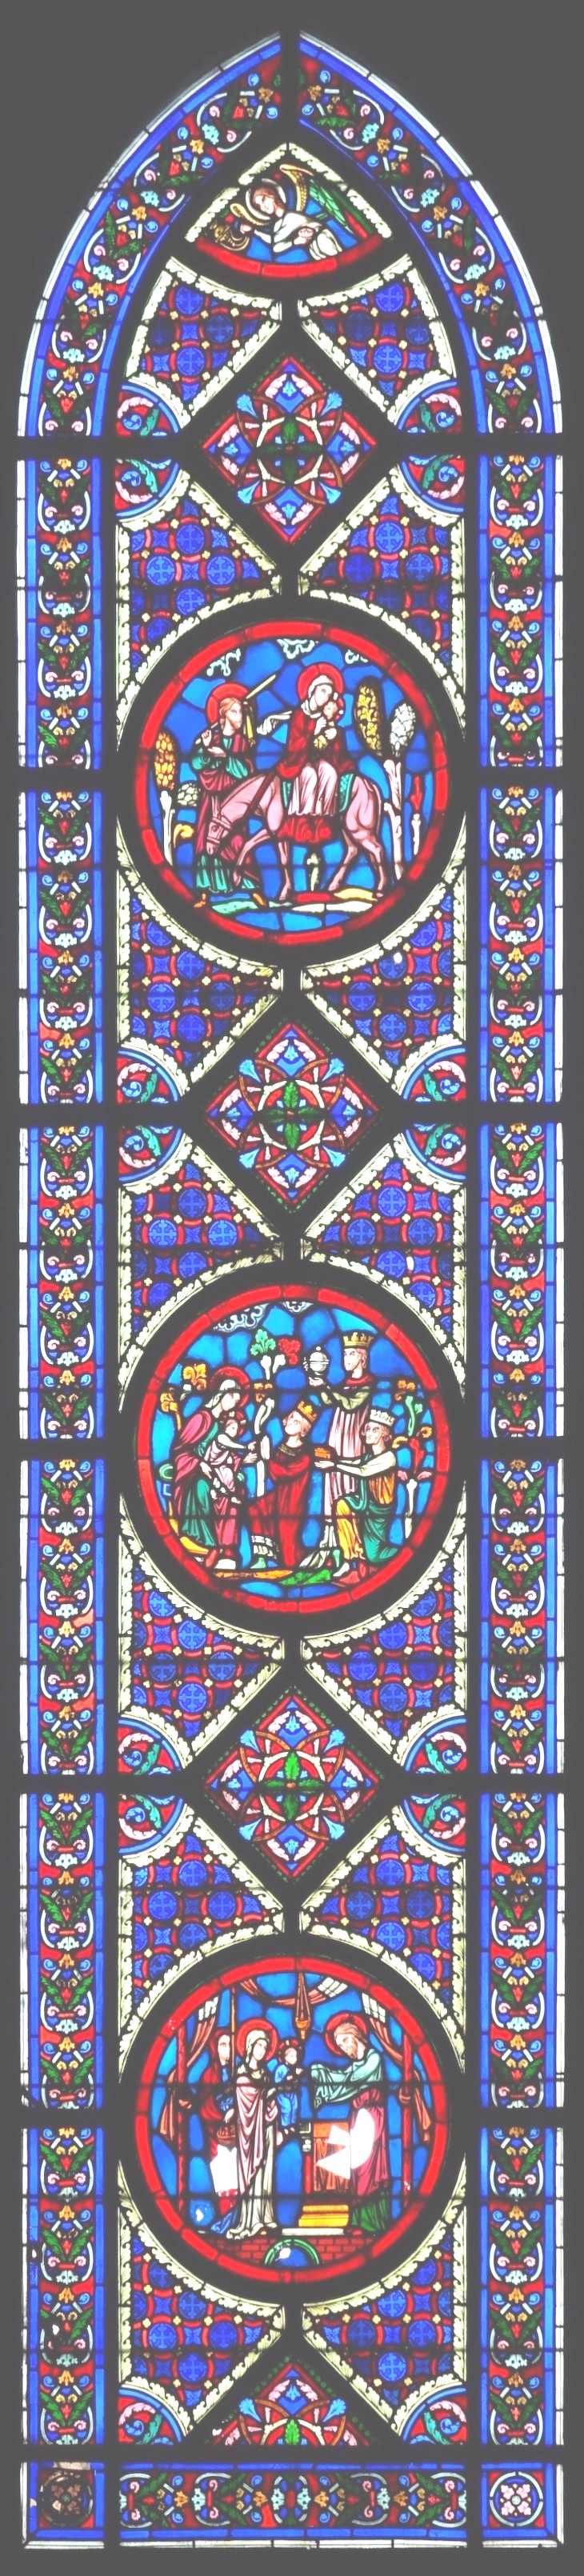 B2 - vitraux de la chapelle épiscopale saint-omer